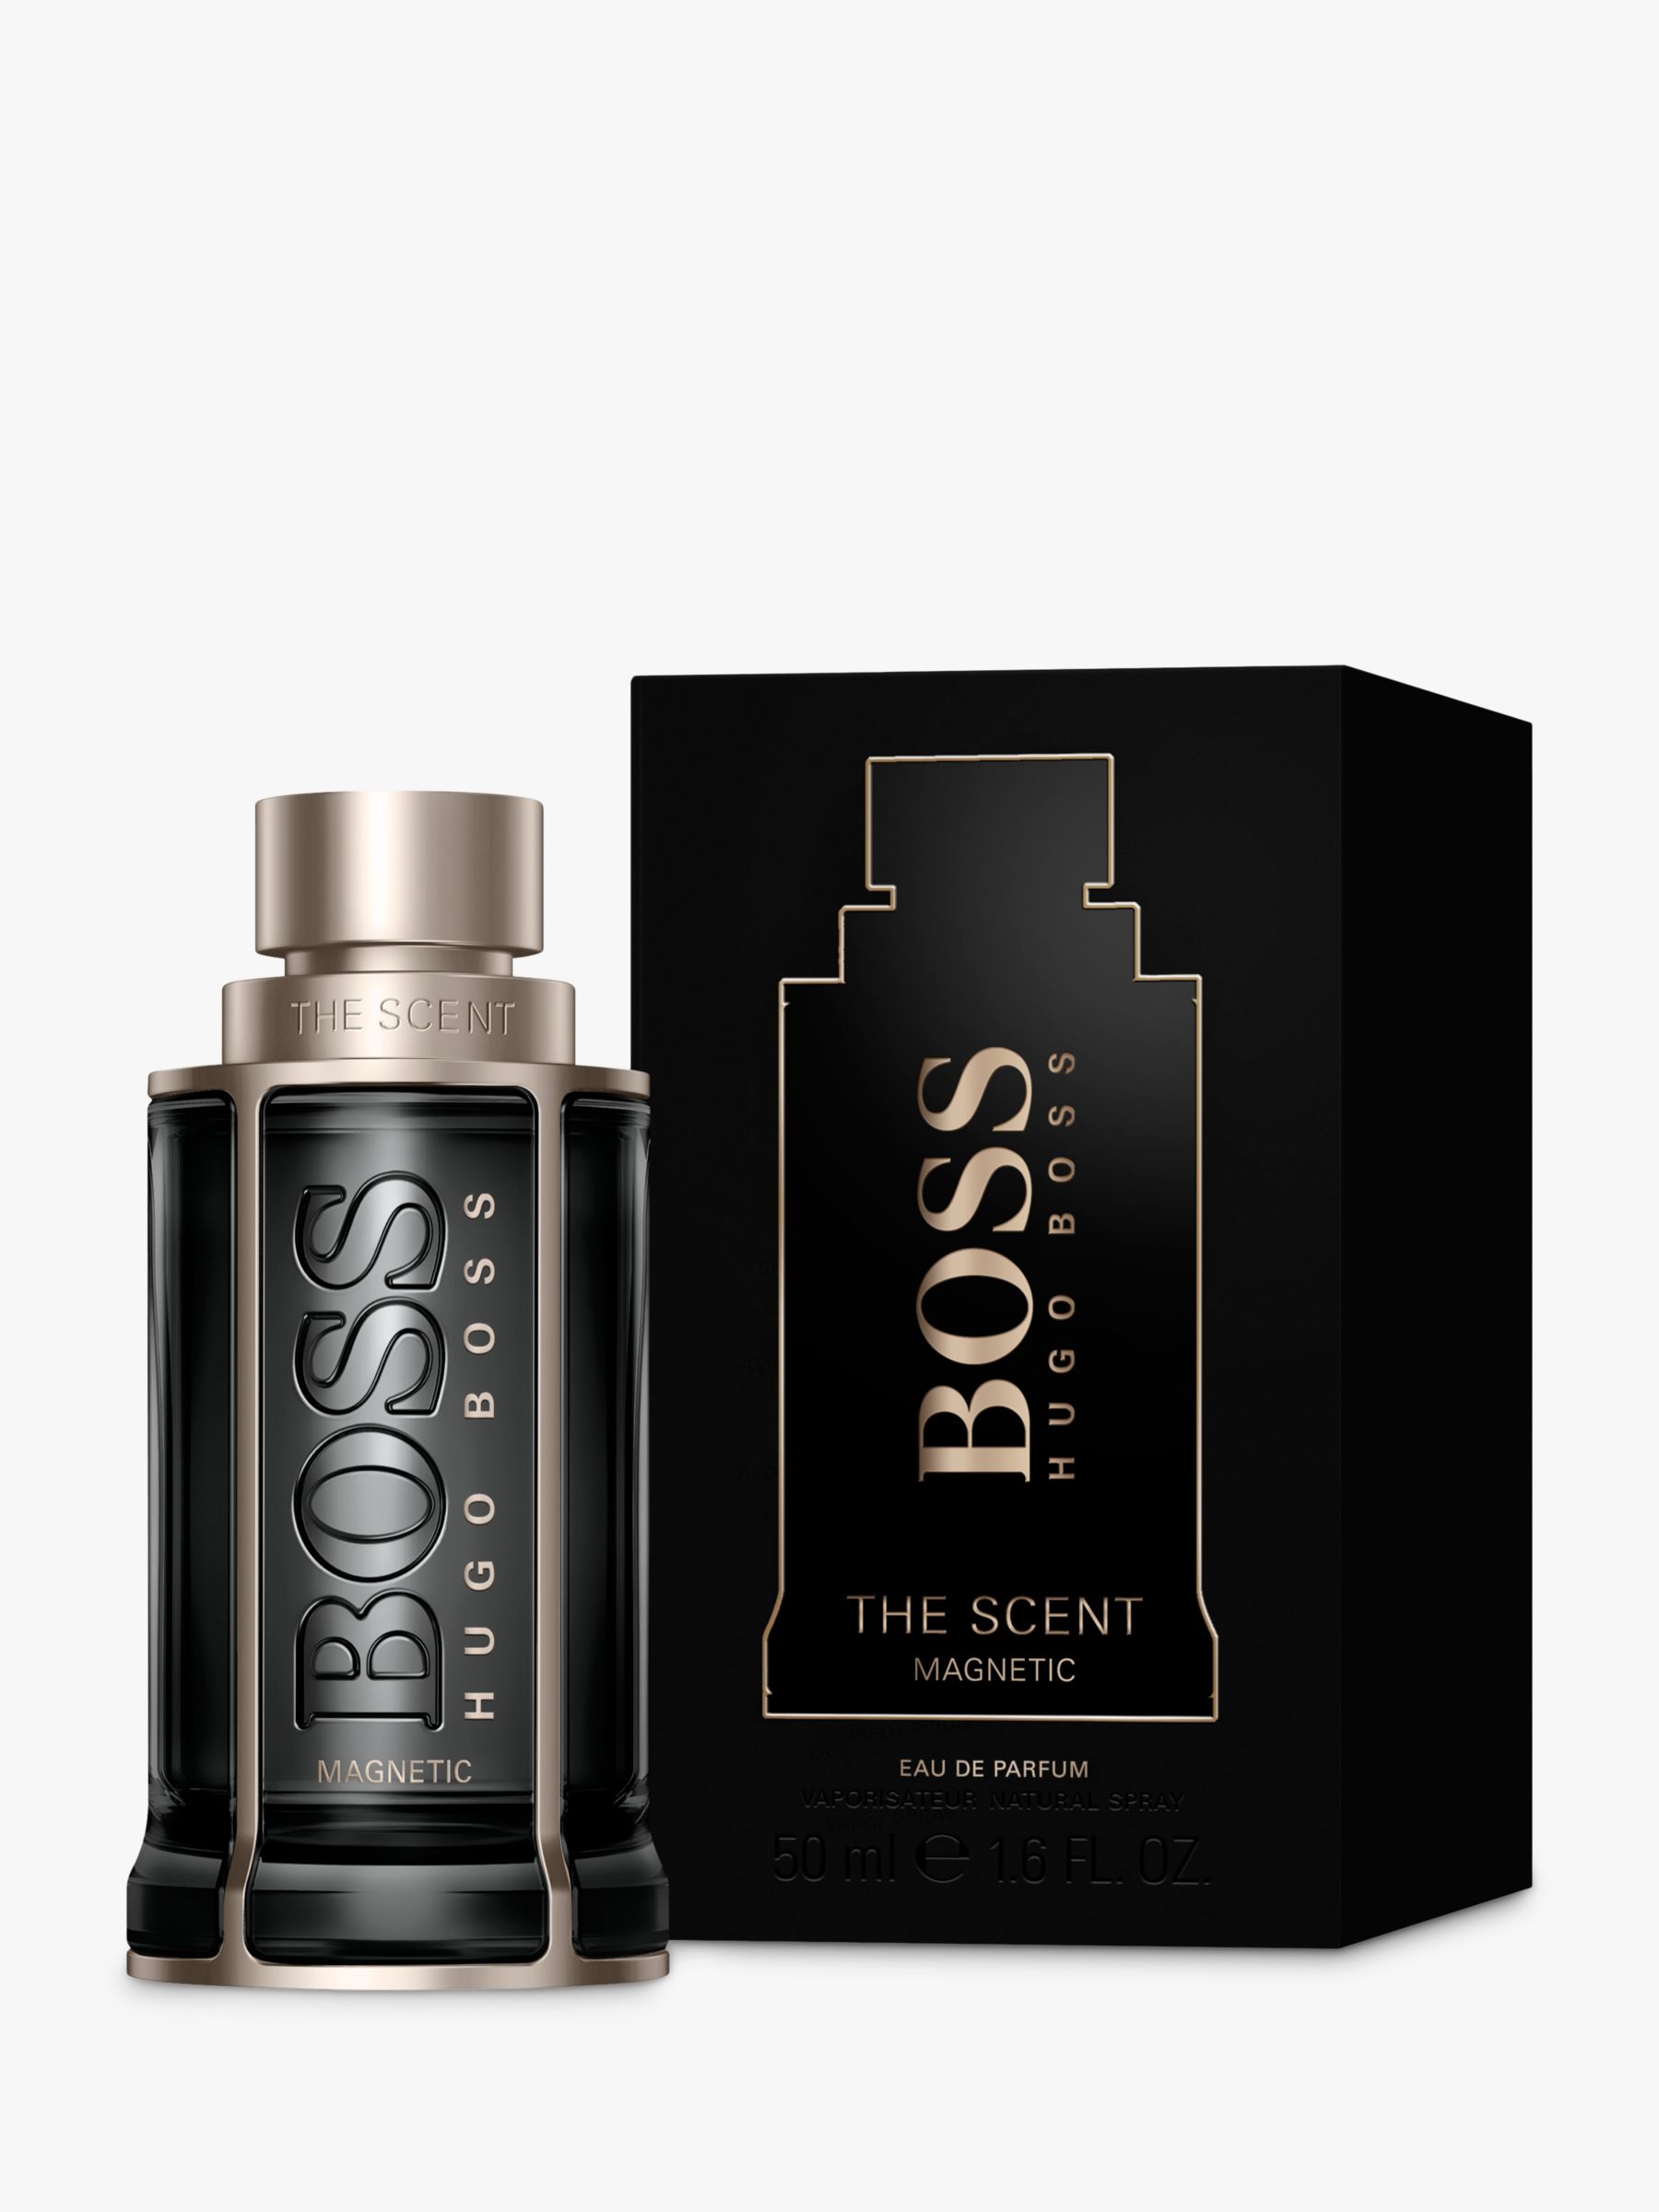 HUGO BOSS BOSS The Scent Magnetic For Him Eau de Parfum, 50ml 2